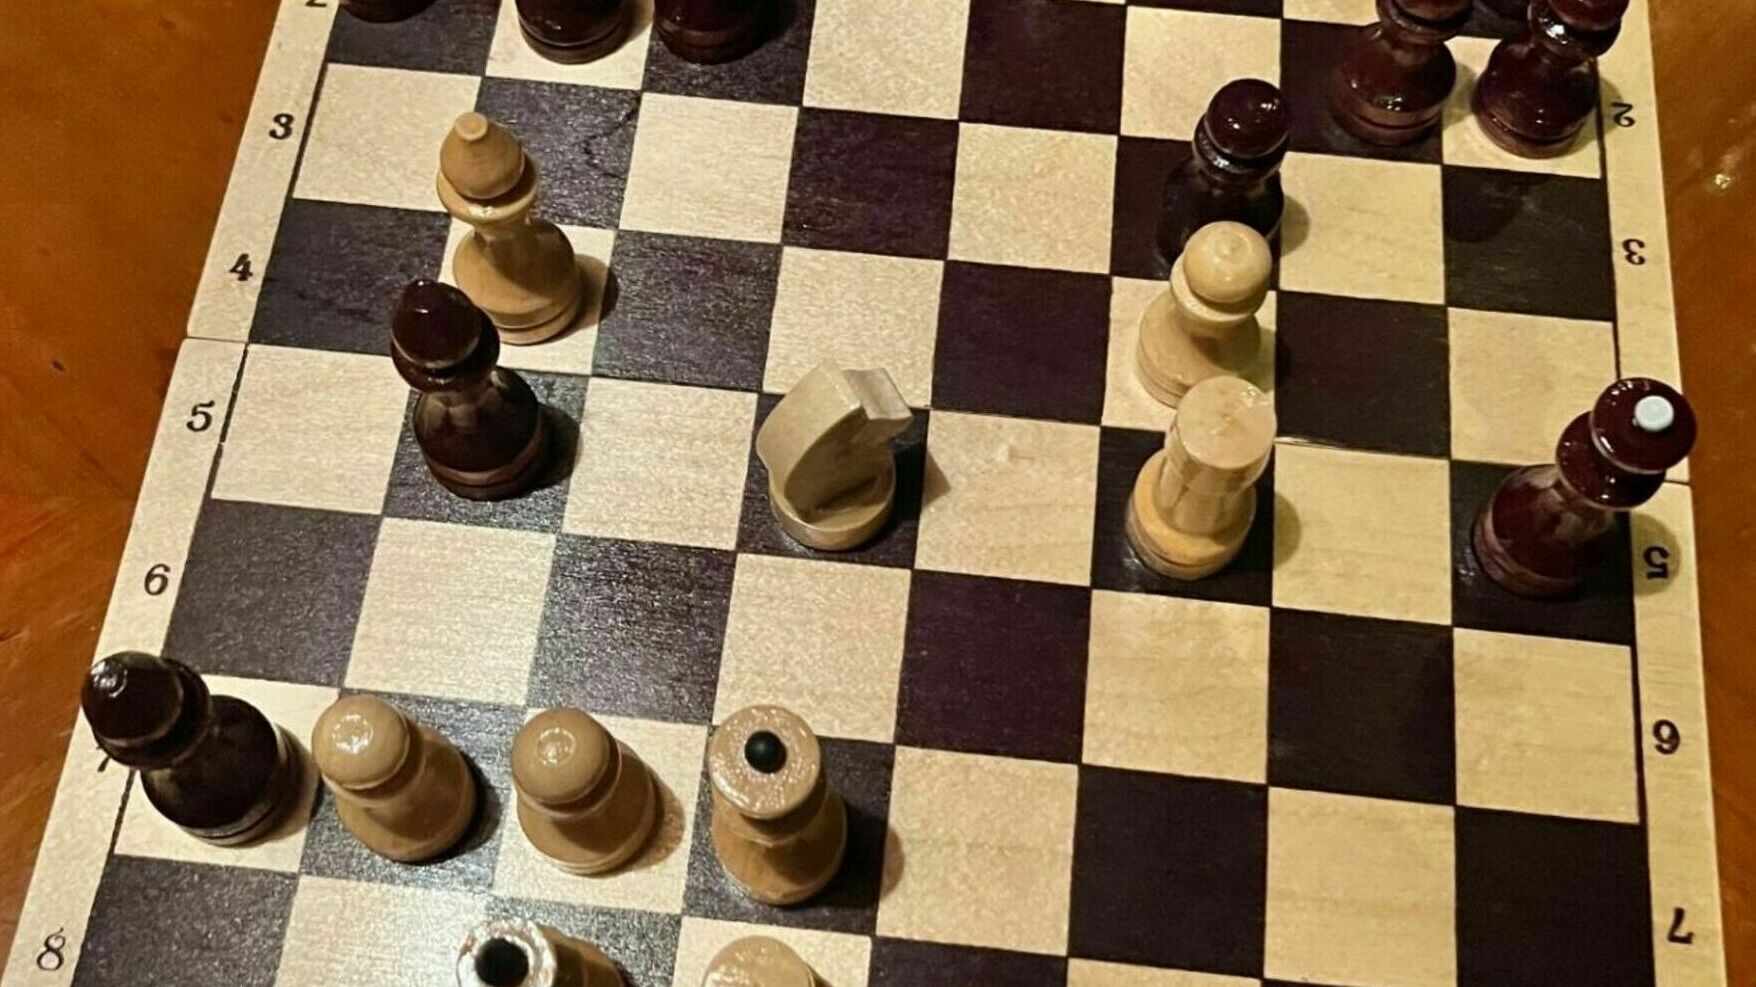 Соперник Яна Непомнящего сдался во второй партии за звание чемпиона мира по шахматам